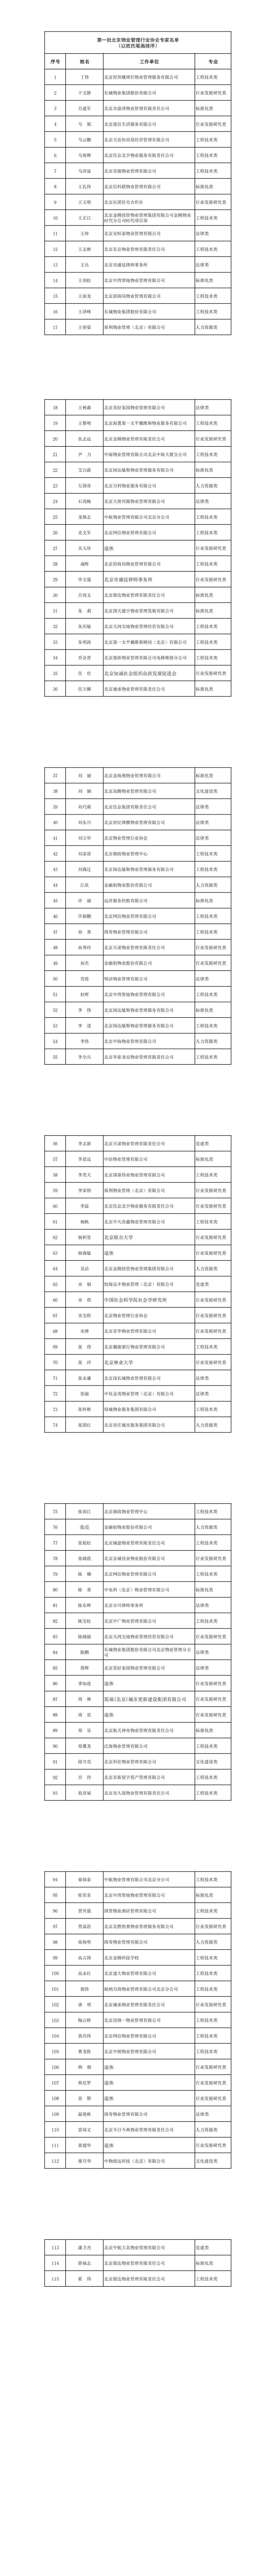 第一批北京物业管理行业协会专家名单_00.png